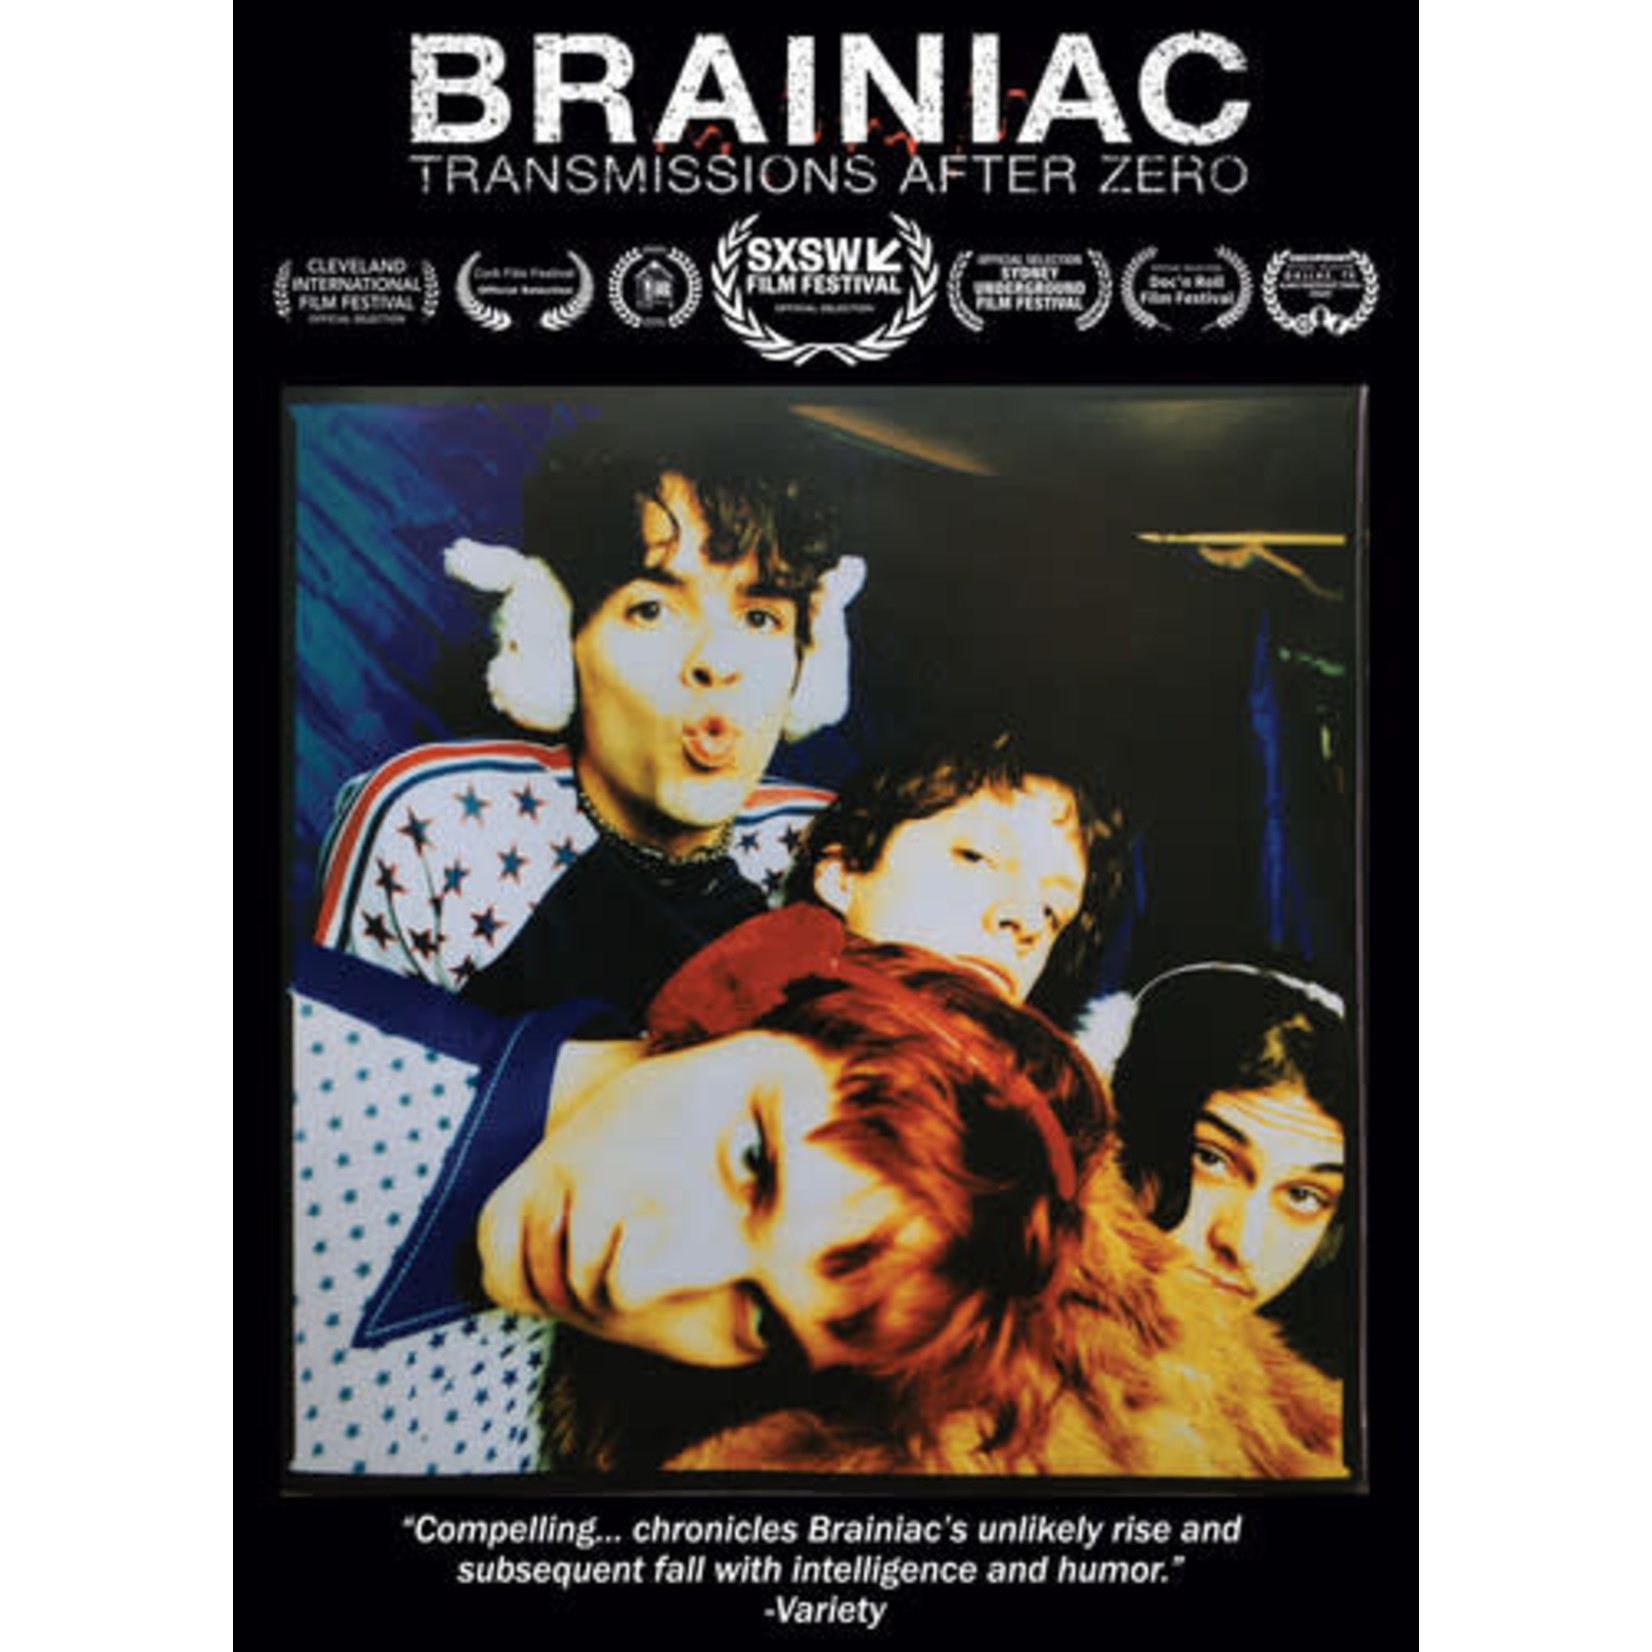 Brainiac - Transmissions After Zero (DVD)